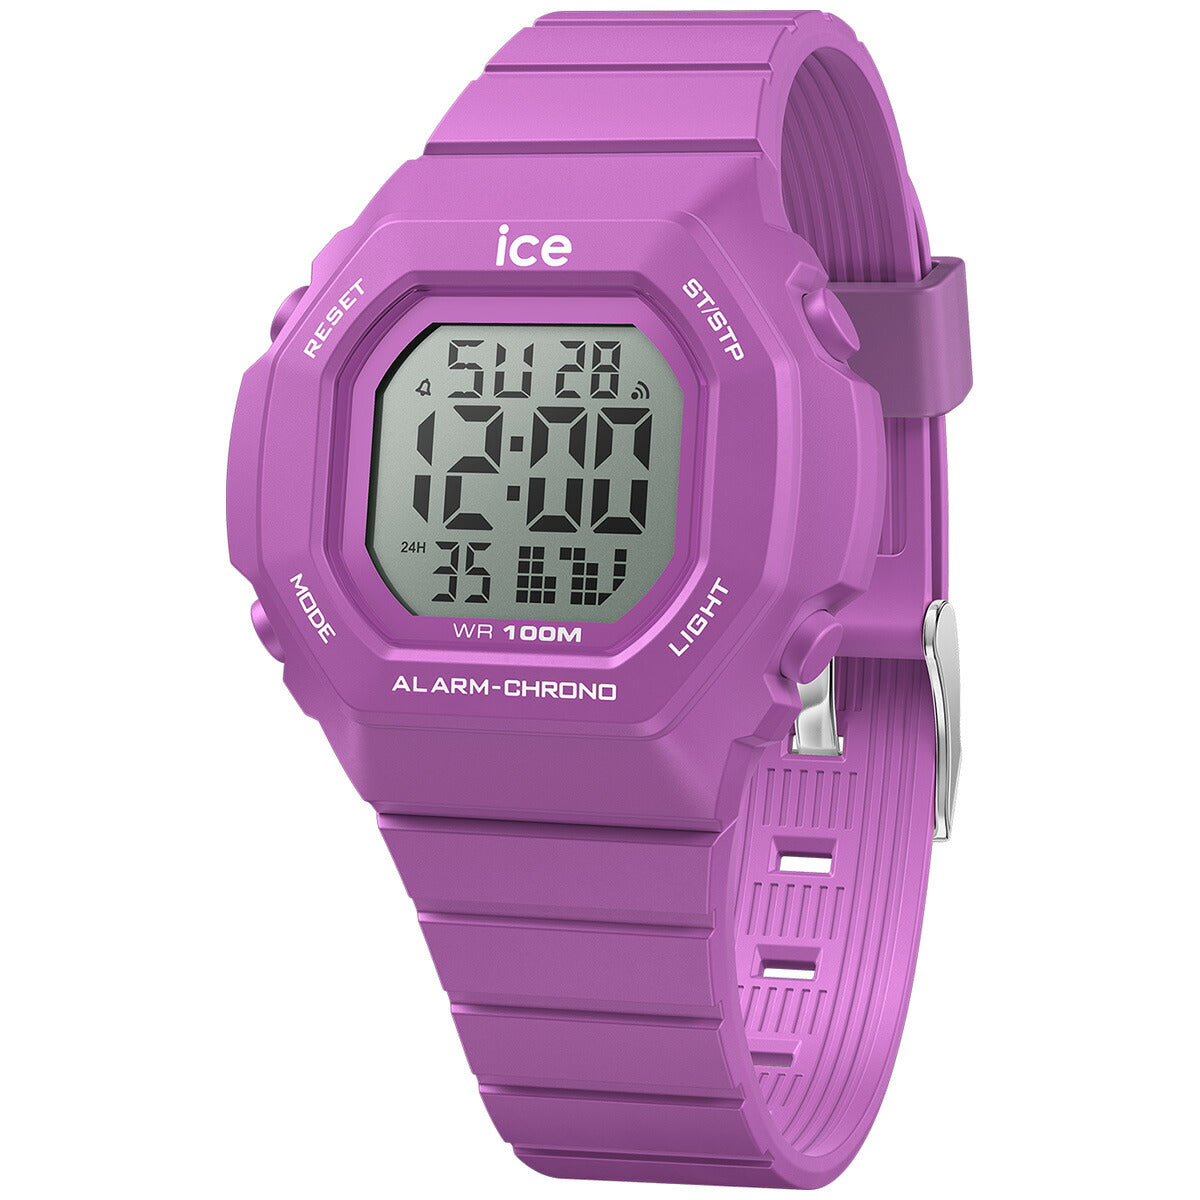 アイスウォッチ ICE-WATCH 腕時計 メンズ レディース アイスデジット ウルトラ ICE digit ultra パープル 022101